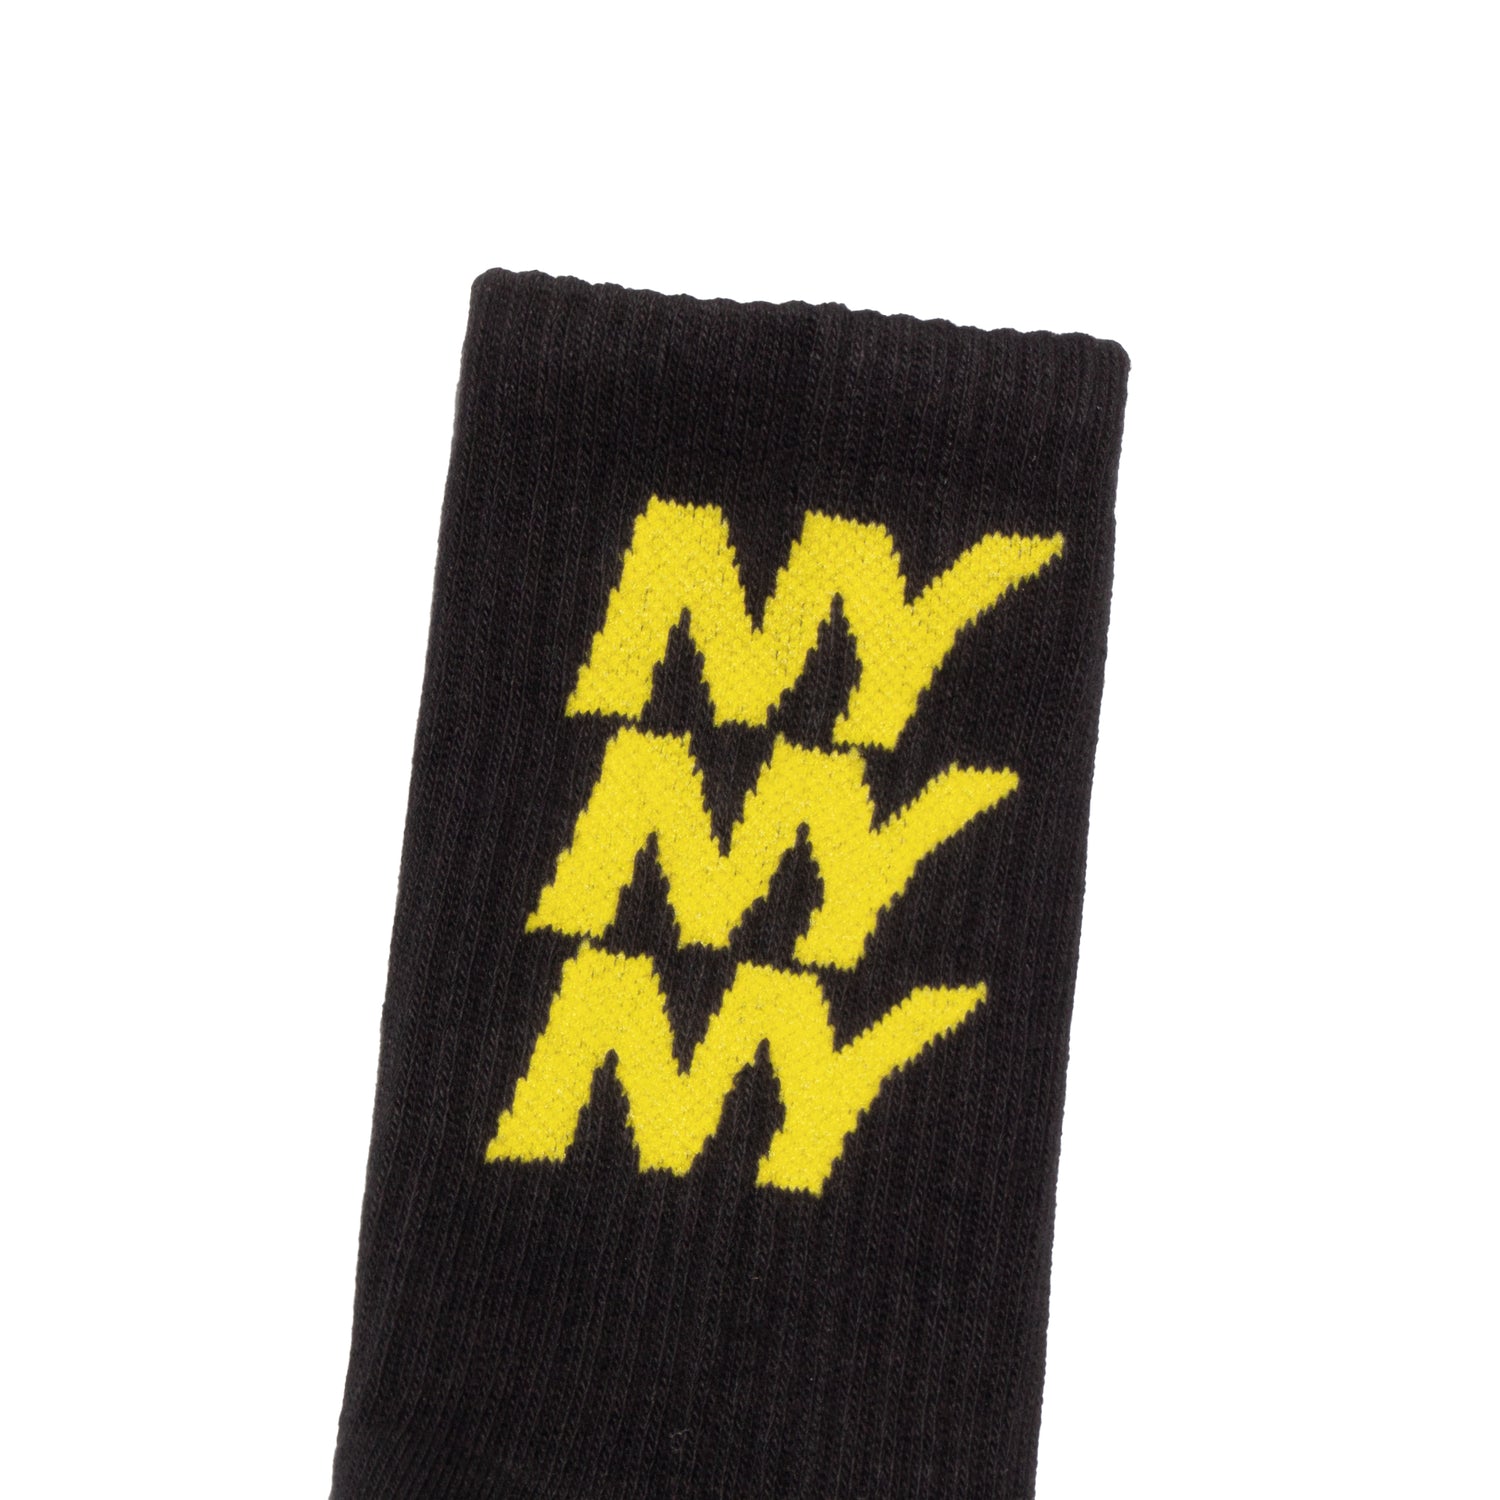 Only NY NY Repeat Crew Sock - Black